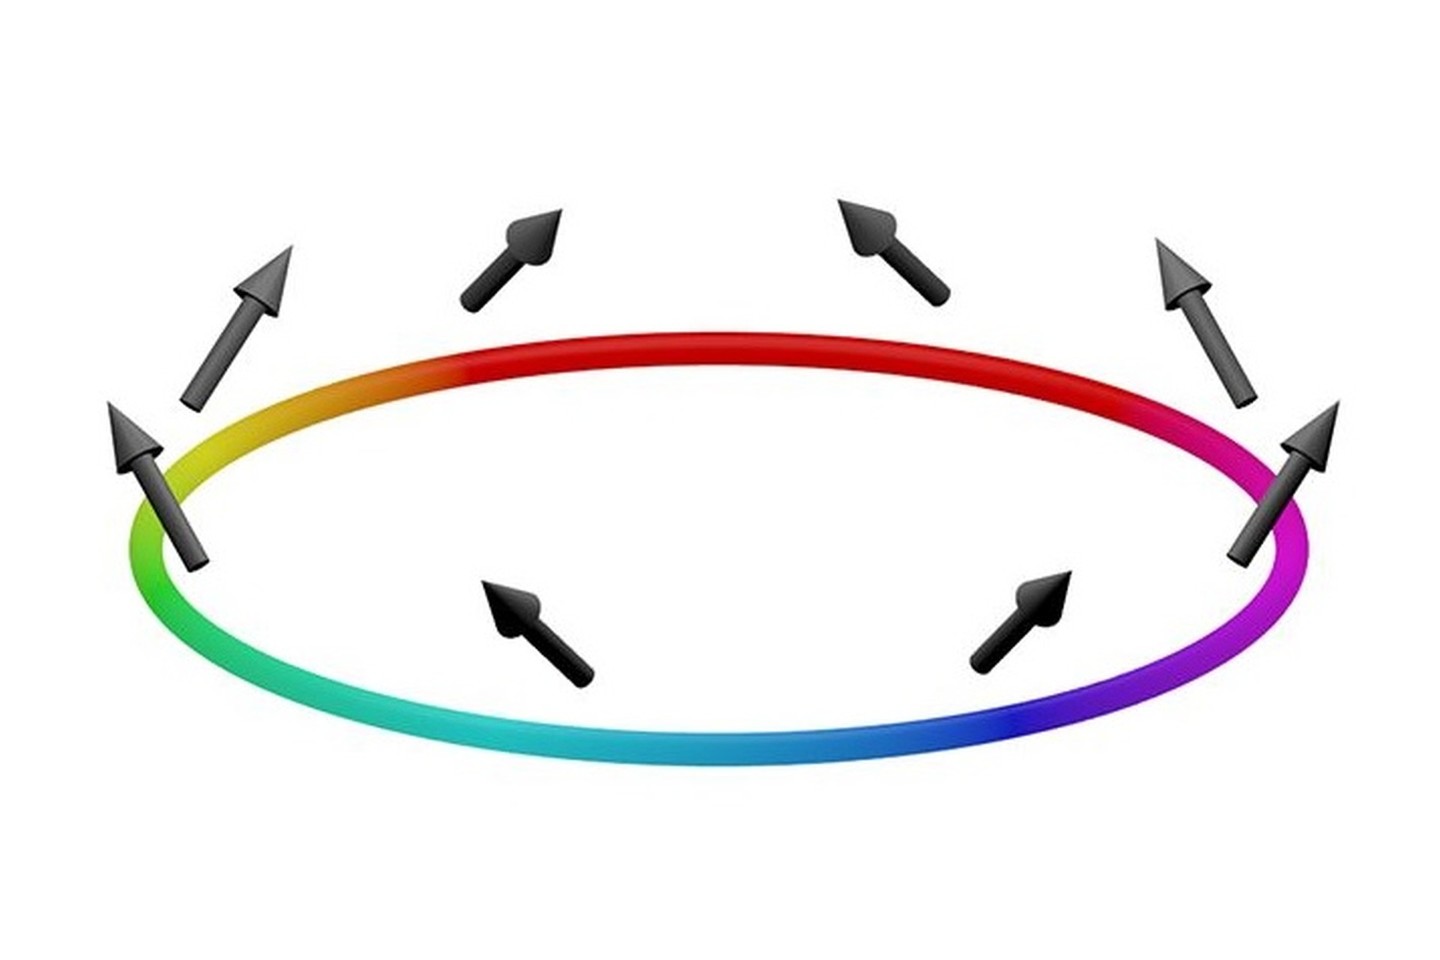  Dalelių srovė (iliustruota kintančia spalva) ir sukinių srovė (parodyta rodyklėlėmis) gali tekėti be nuostolių toje pačioje sistemoje, šiuo atveju, žiedo formos šaltųjų atomų debesėlyje.